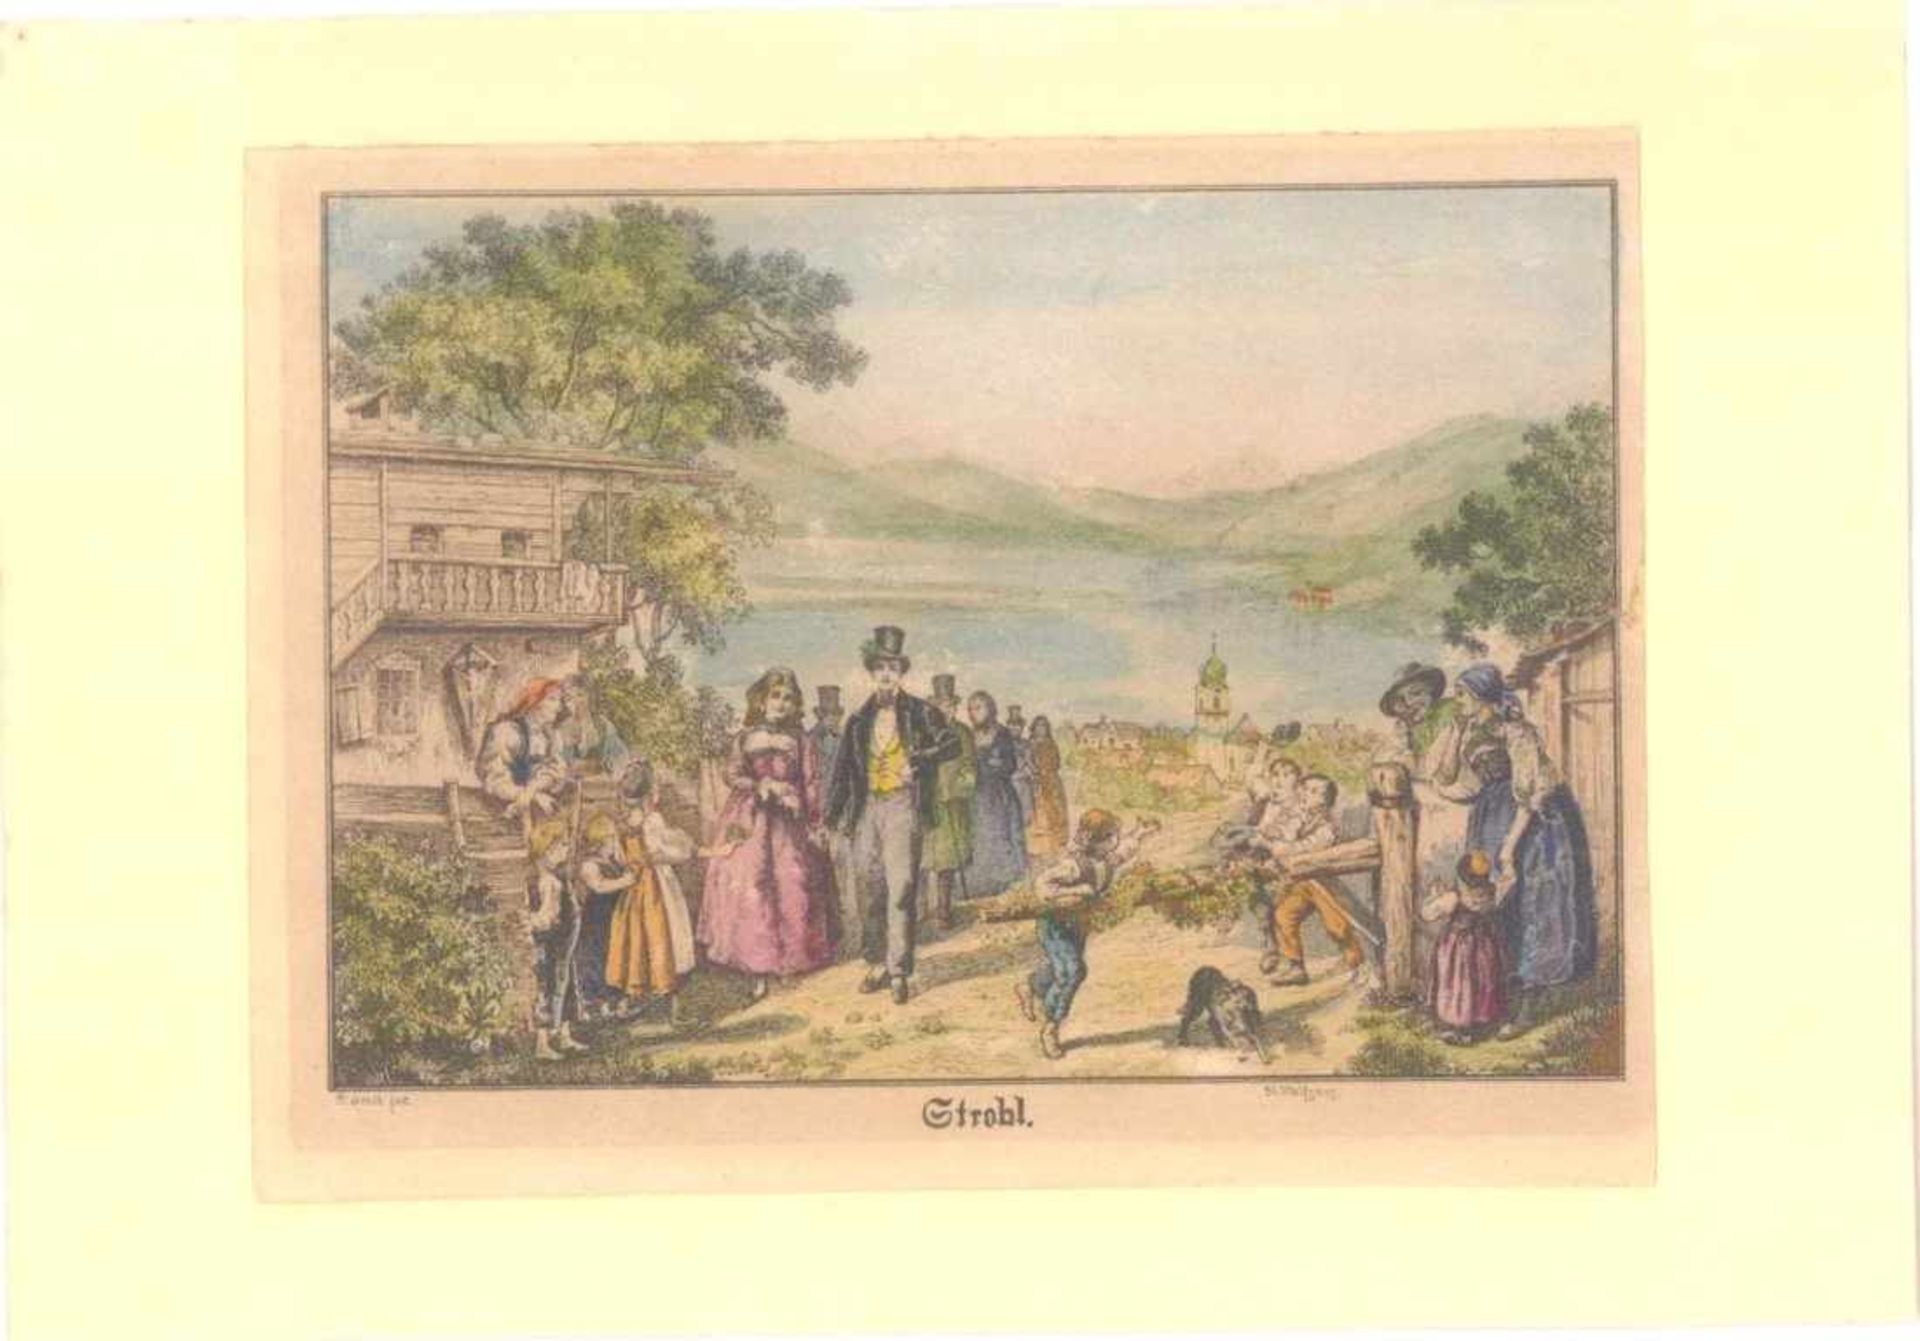 Kolorierte Umrissradierung von Brand um 1830Strobl am Wolfgangssee. Blick von einer Anhöhe auf Ort